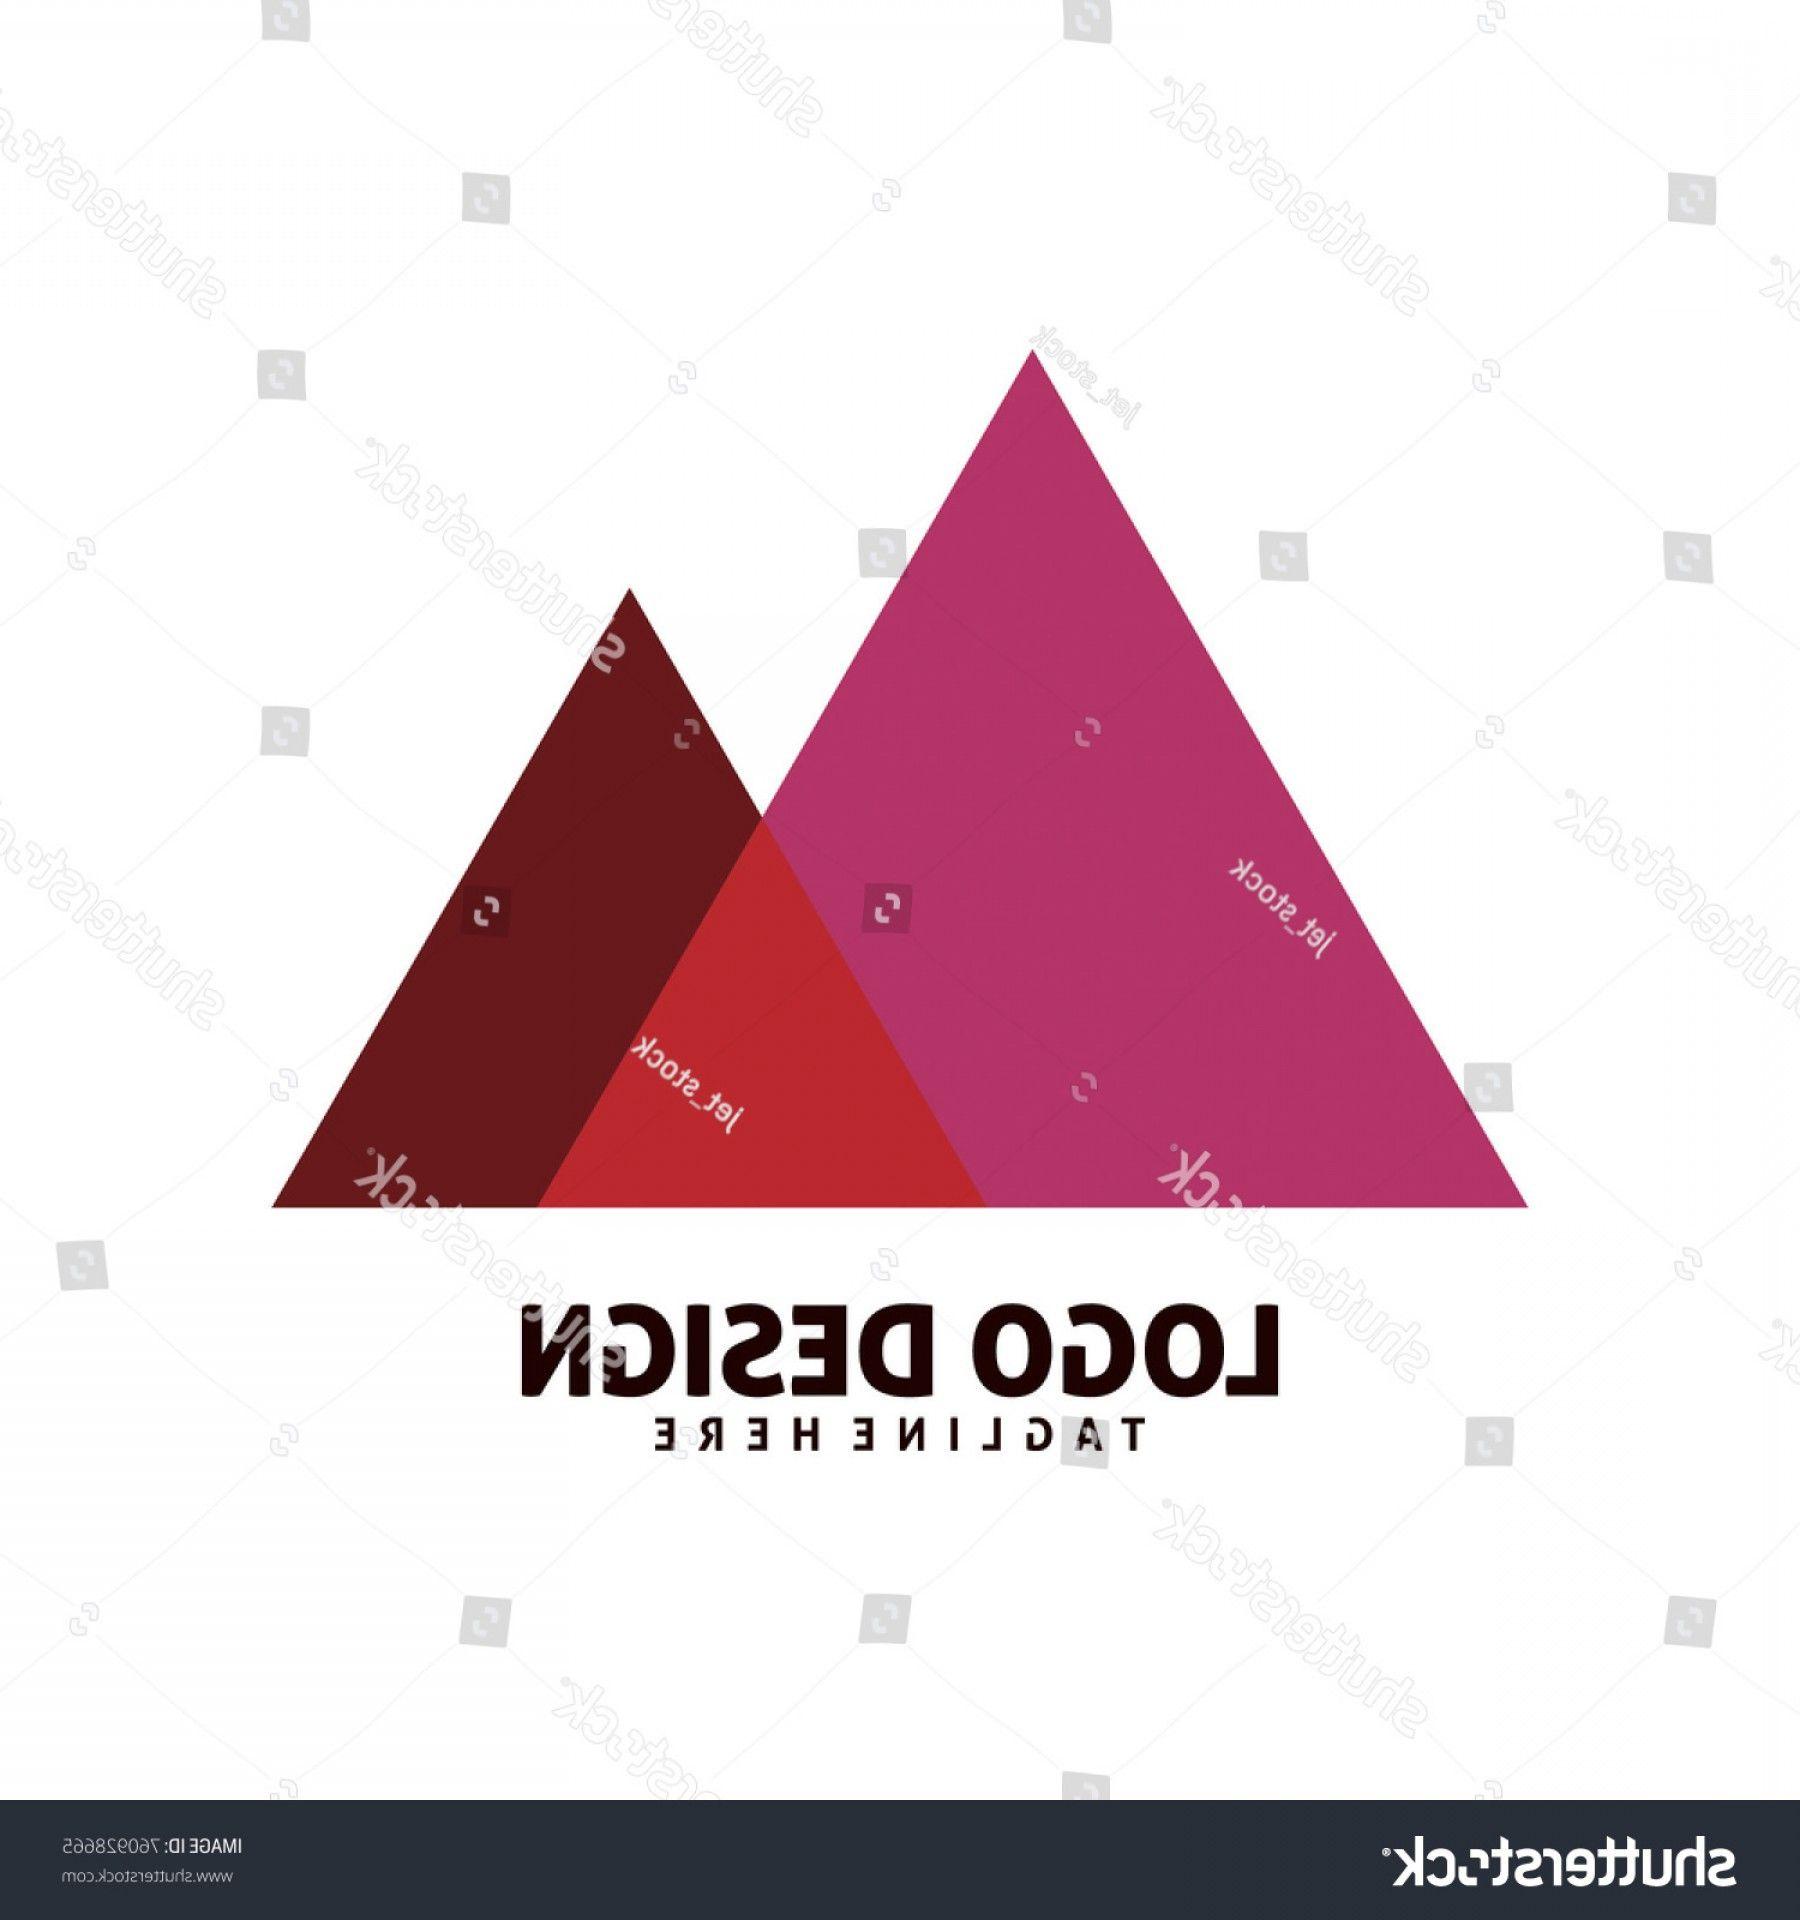 Triangle Mountain Logo - Color Triangle Mountain Logo Design